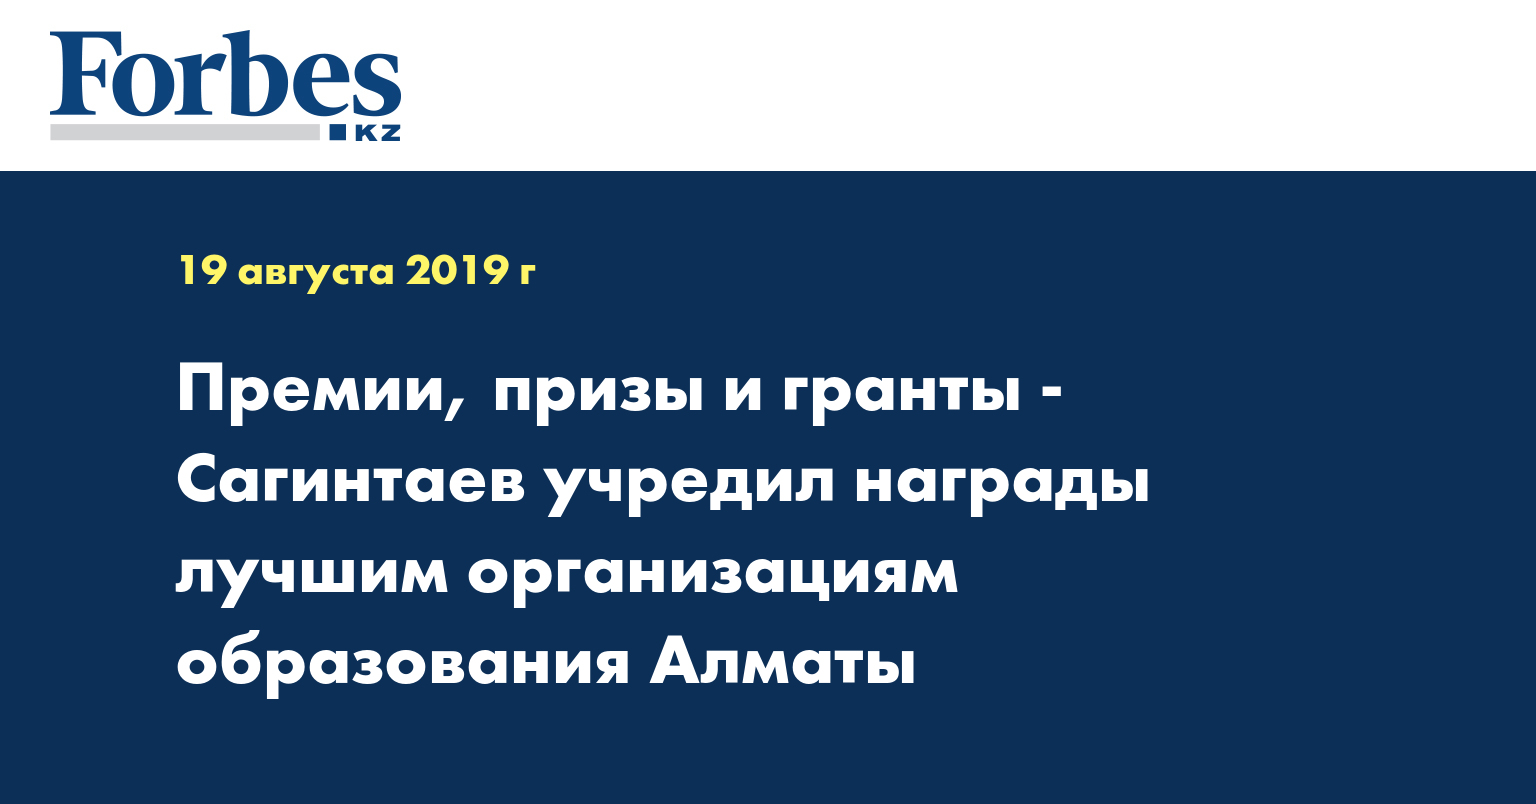 Премии, призы и гранты - Сагинтаев учредил награды лучшим организациям образования Алматы